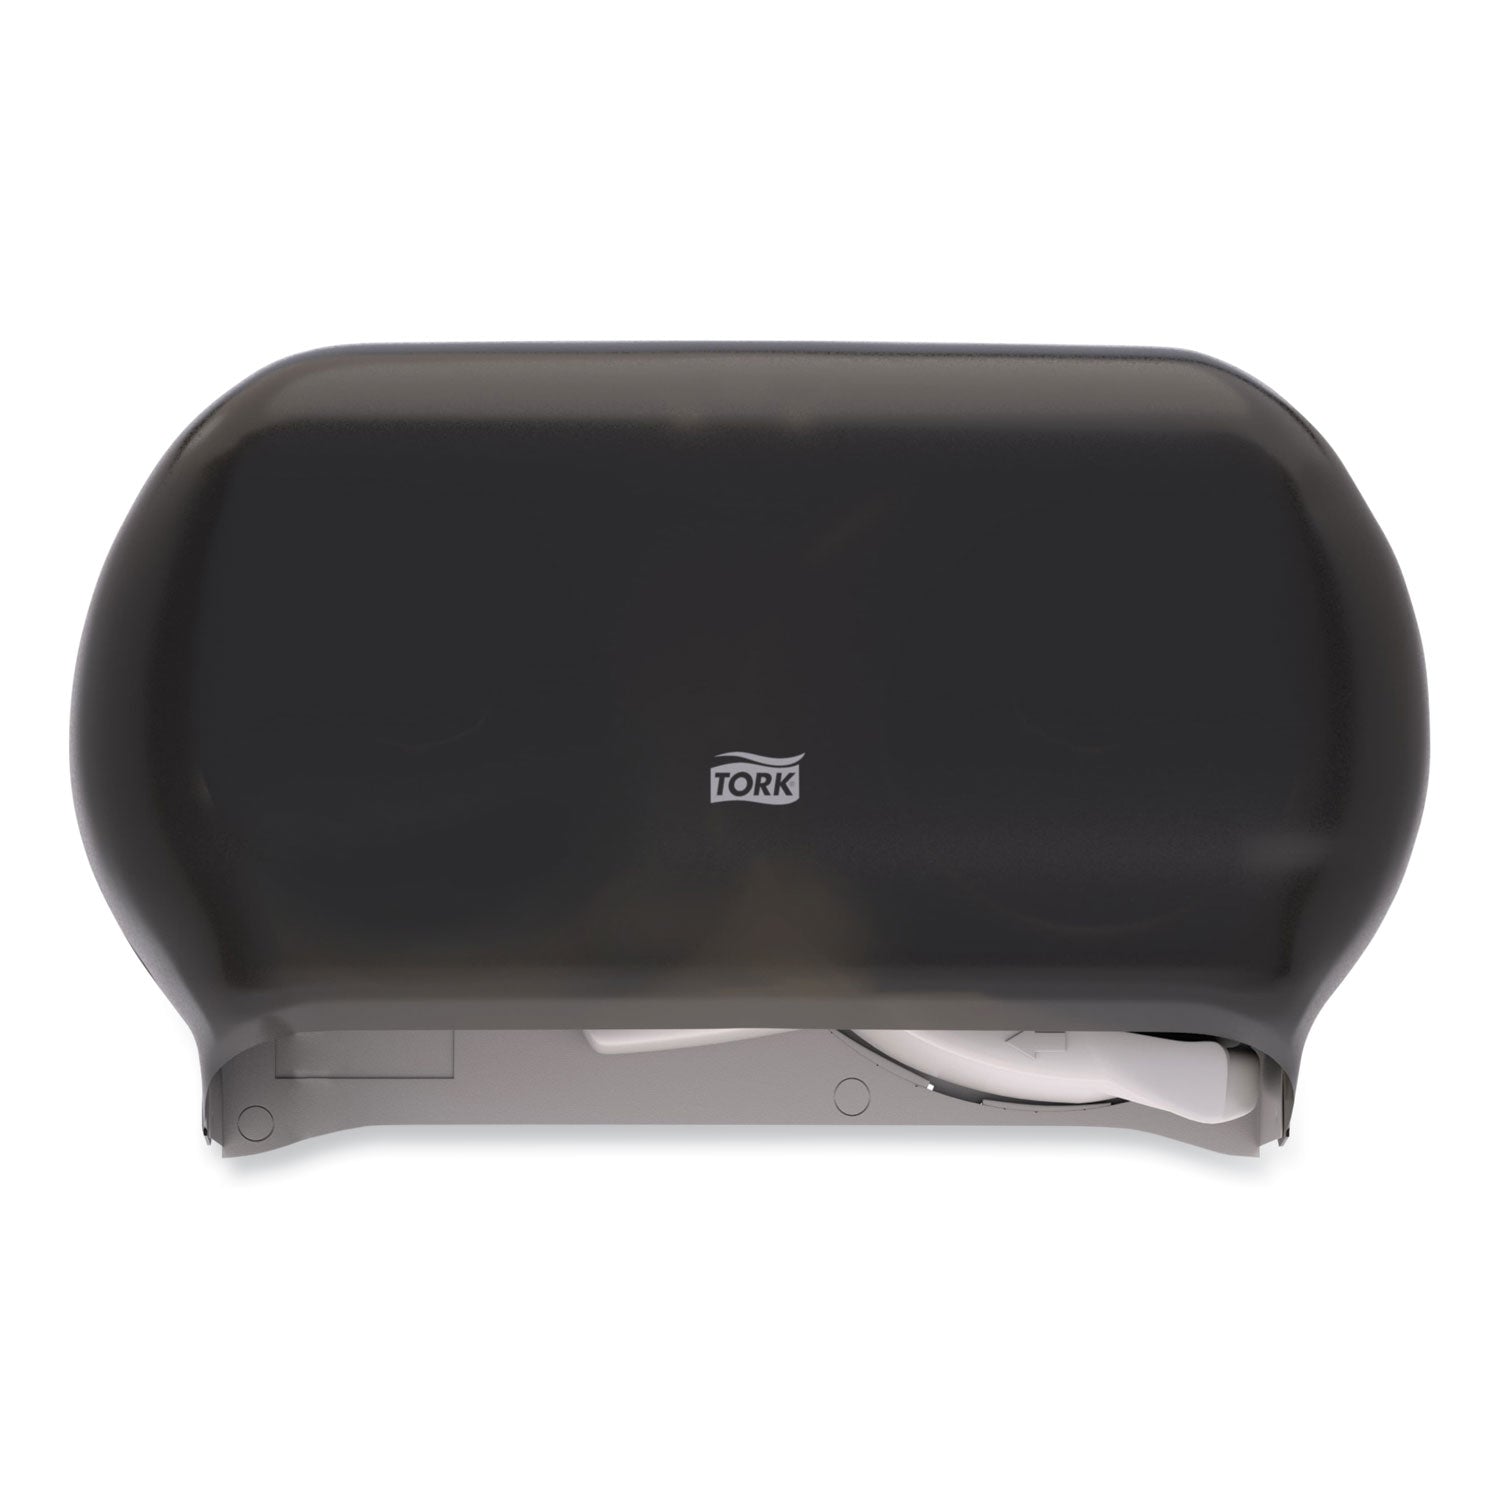 twin-standard-roll-bath-tissue-dispenser-1275-x-557-x-825-smoke_trk59tr - 1